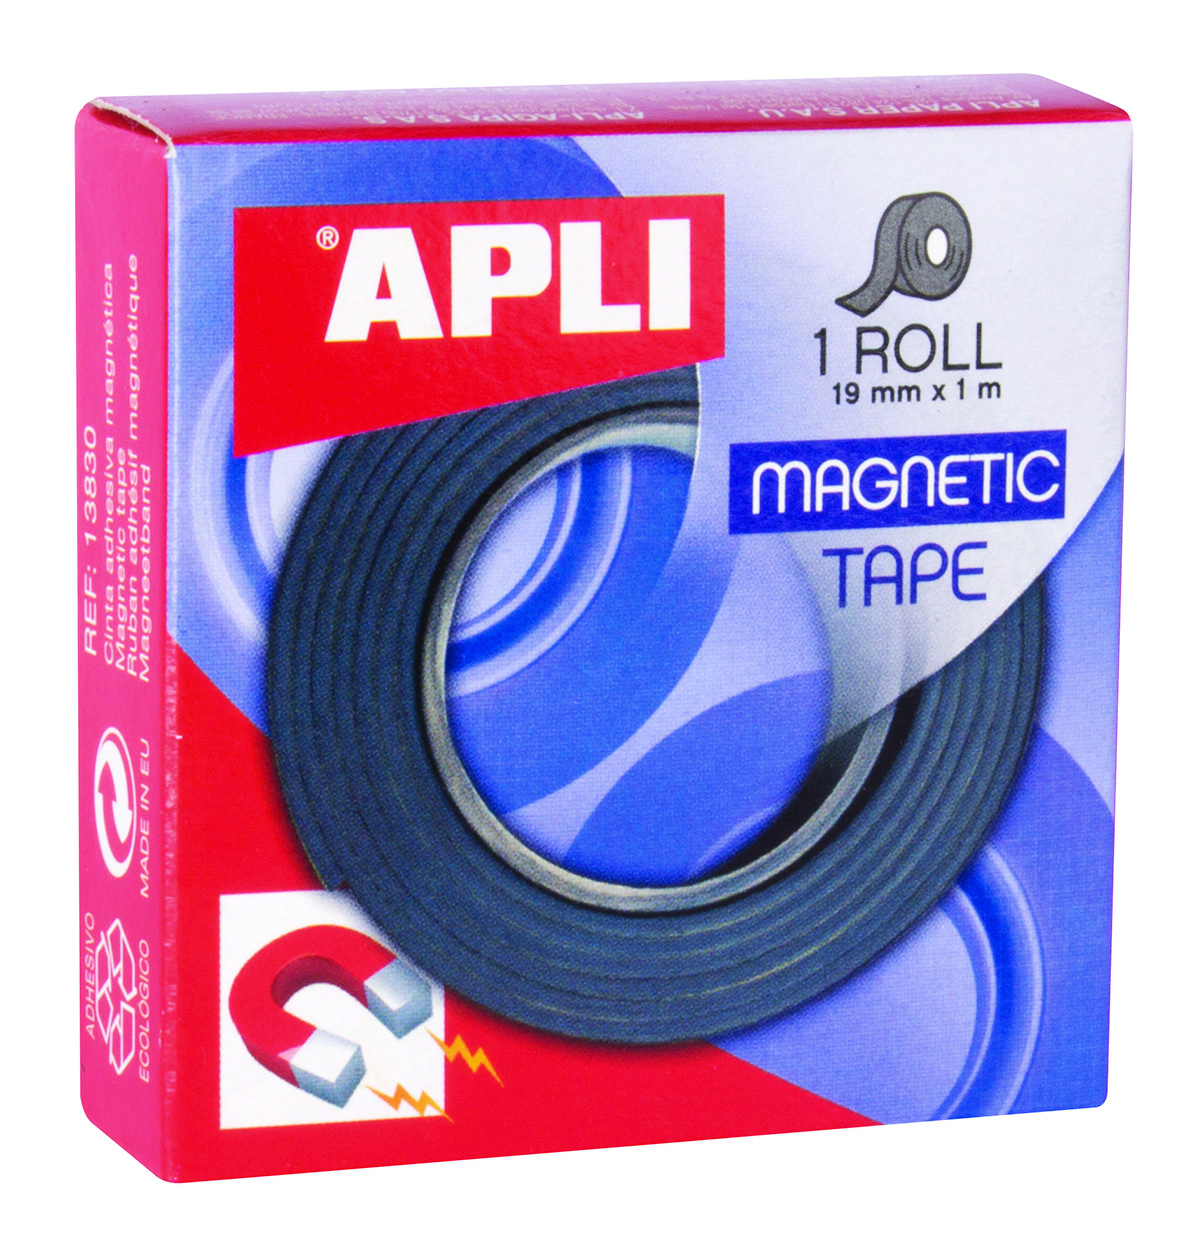 APLI magnetische tape 19mmx1m